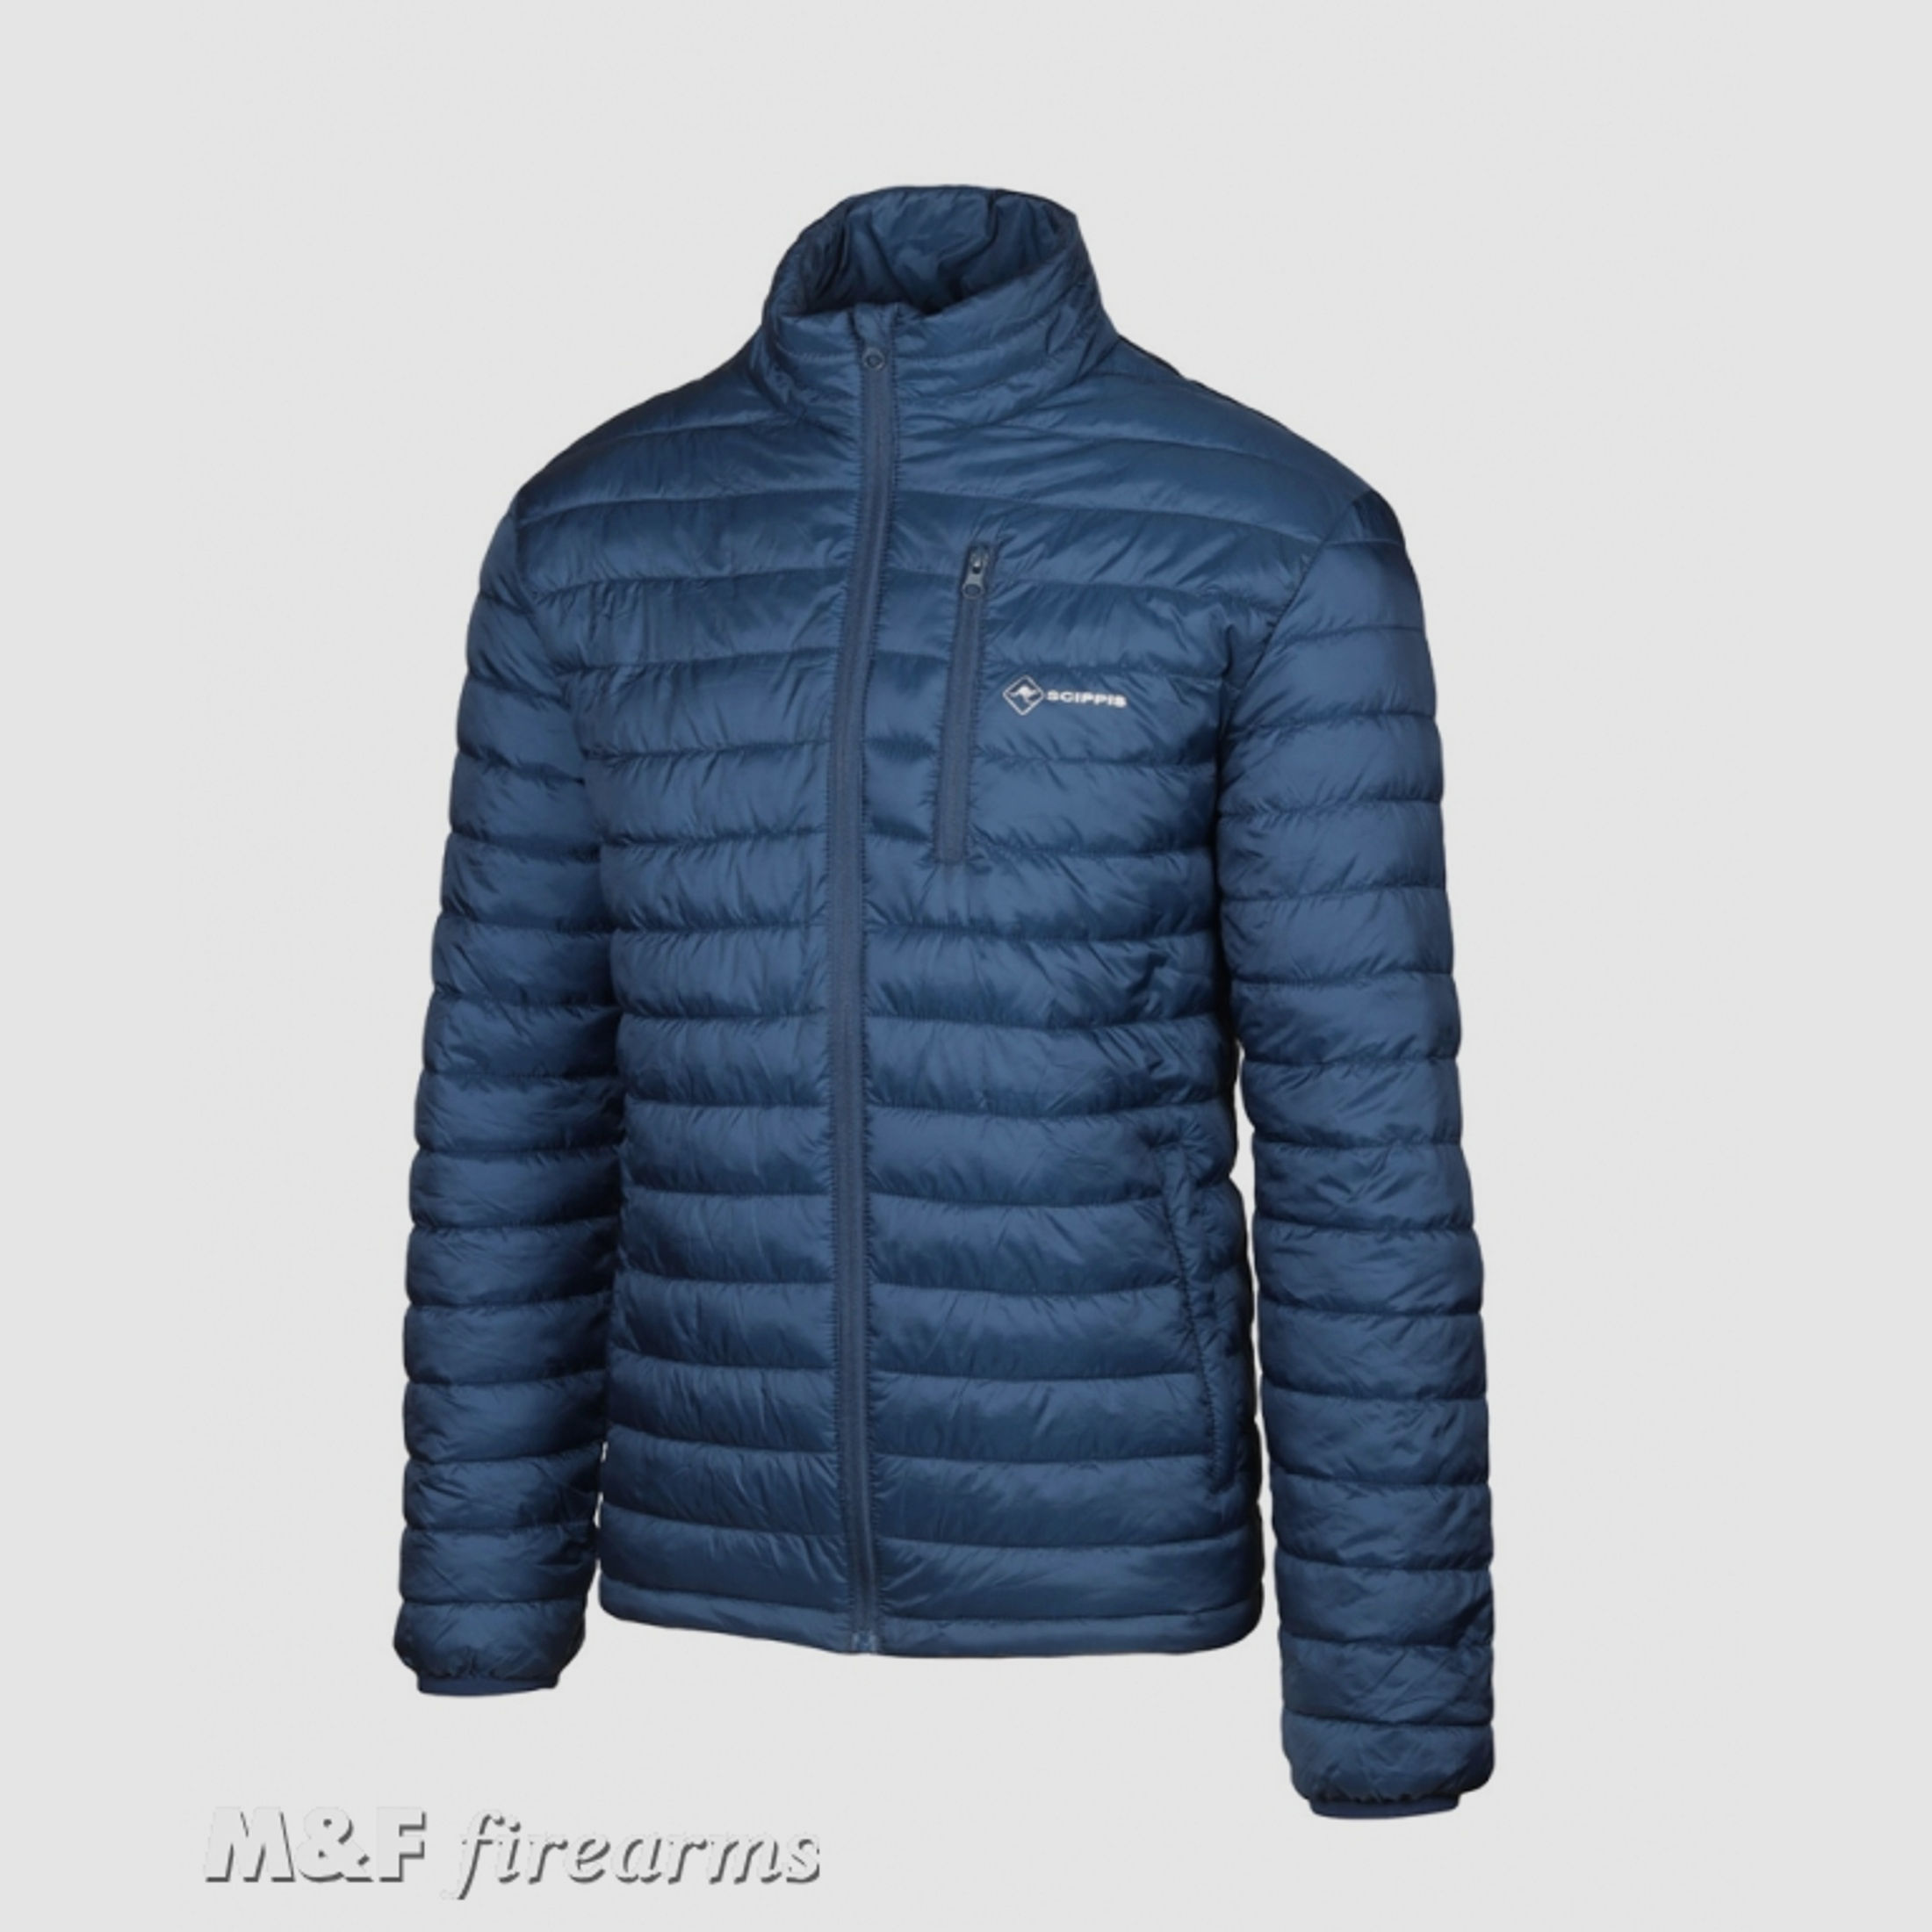 SCIPPIS Cold Force Jacket in Blau für Herren und Damen